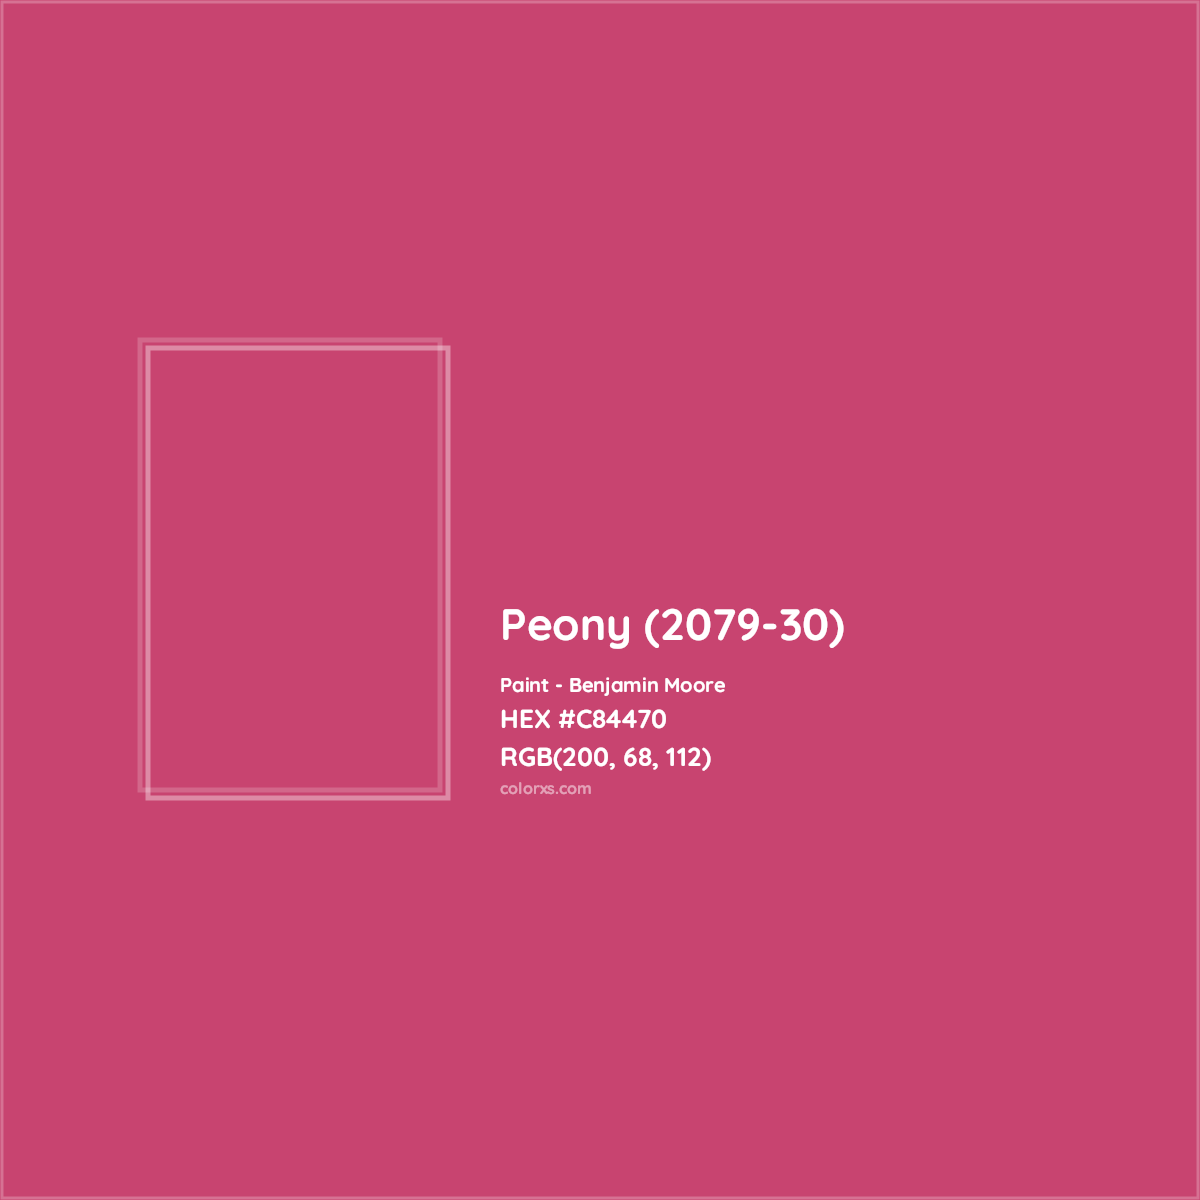 HEX #C84470 Peony (2079-30) Paint Benjamin Moore - Color Code